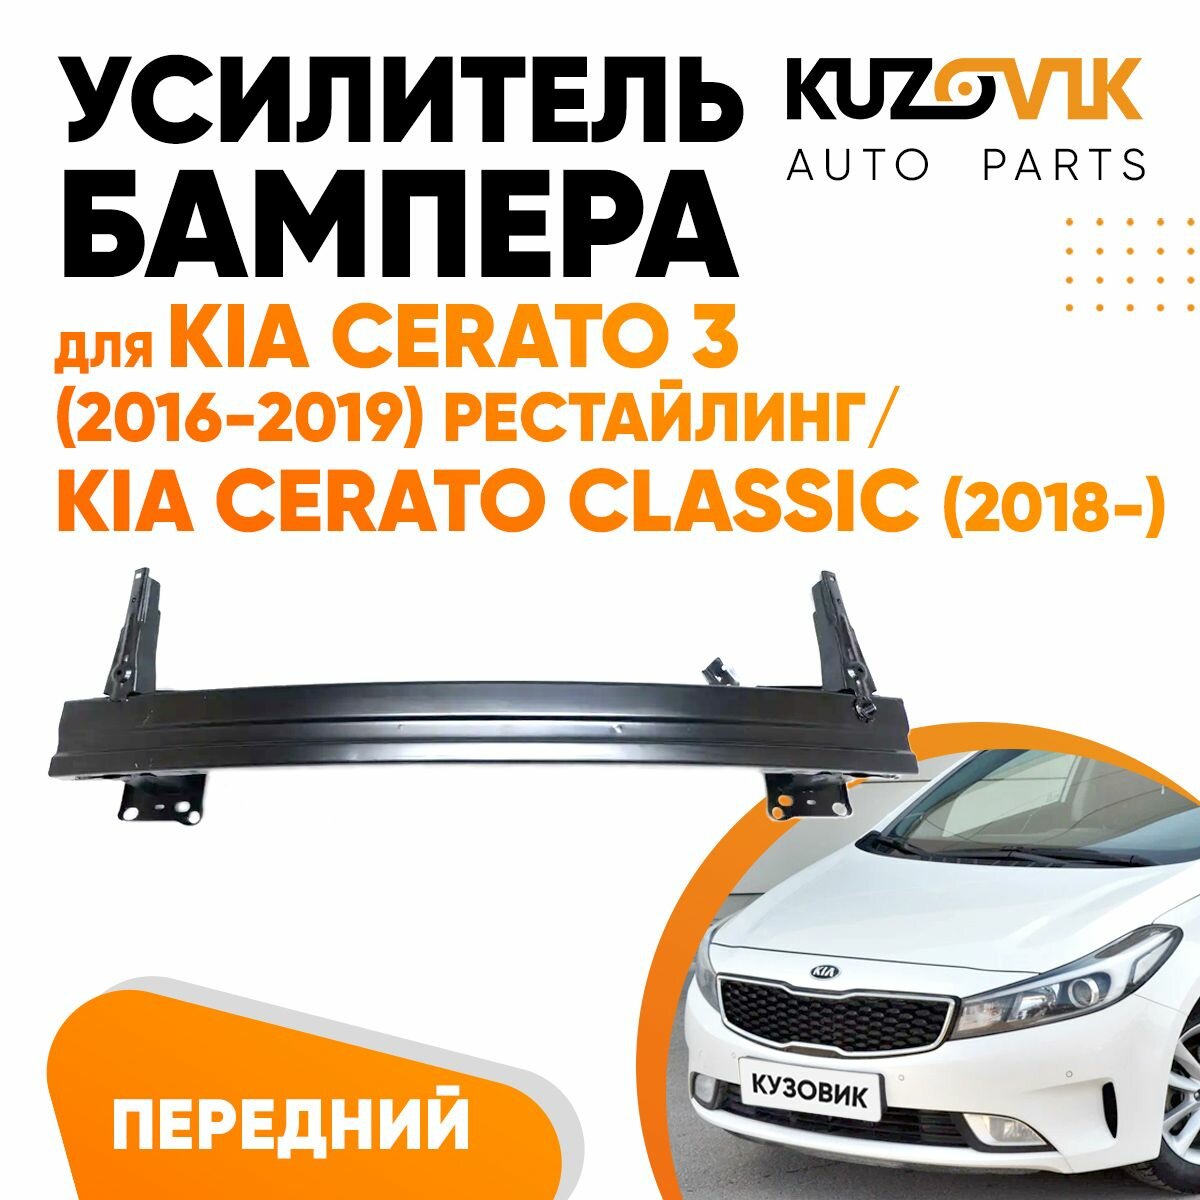 Усилитель переднего бампера Kia Cerato 3 (2016-2019) рестайлинг / Kia Cerato Classic (2018-)